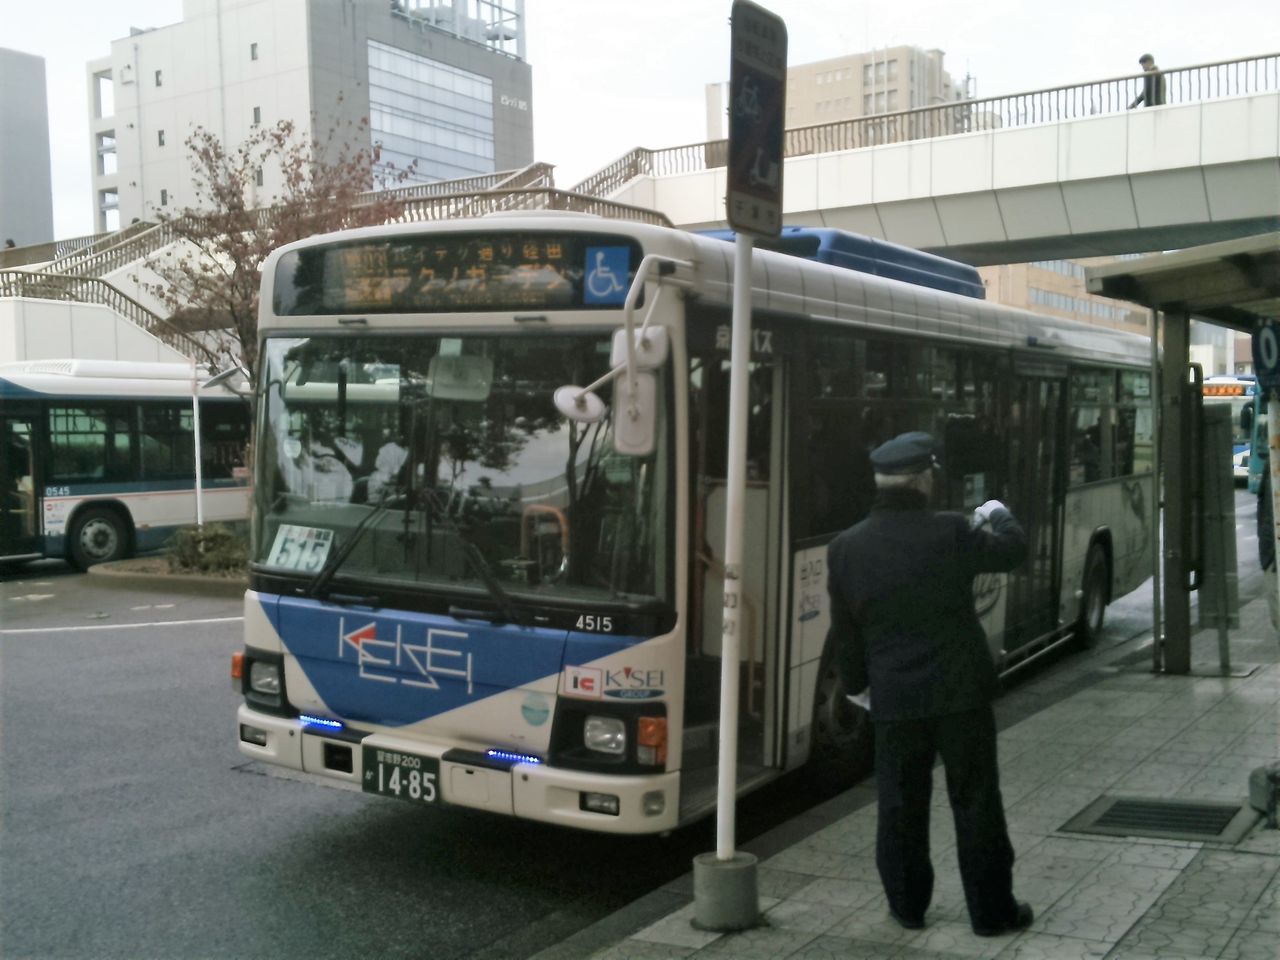 海浜幕張 幕張本郷間のバス輸送改善は可能か その5 迫力ある朝ラッシュ時幕張本郷駅の観察 Shinoの鉄道ブログ